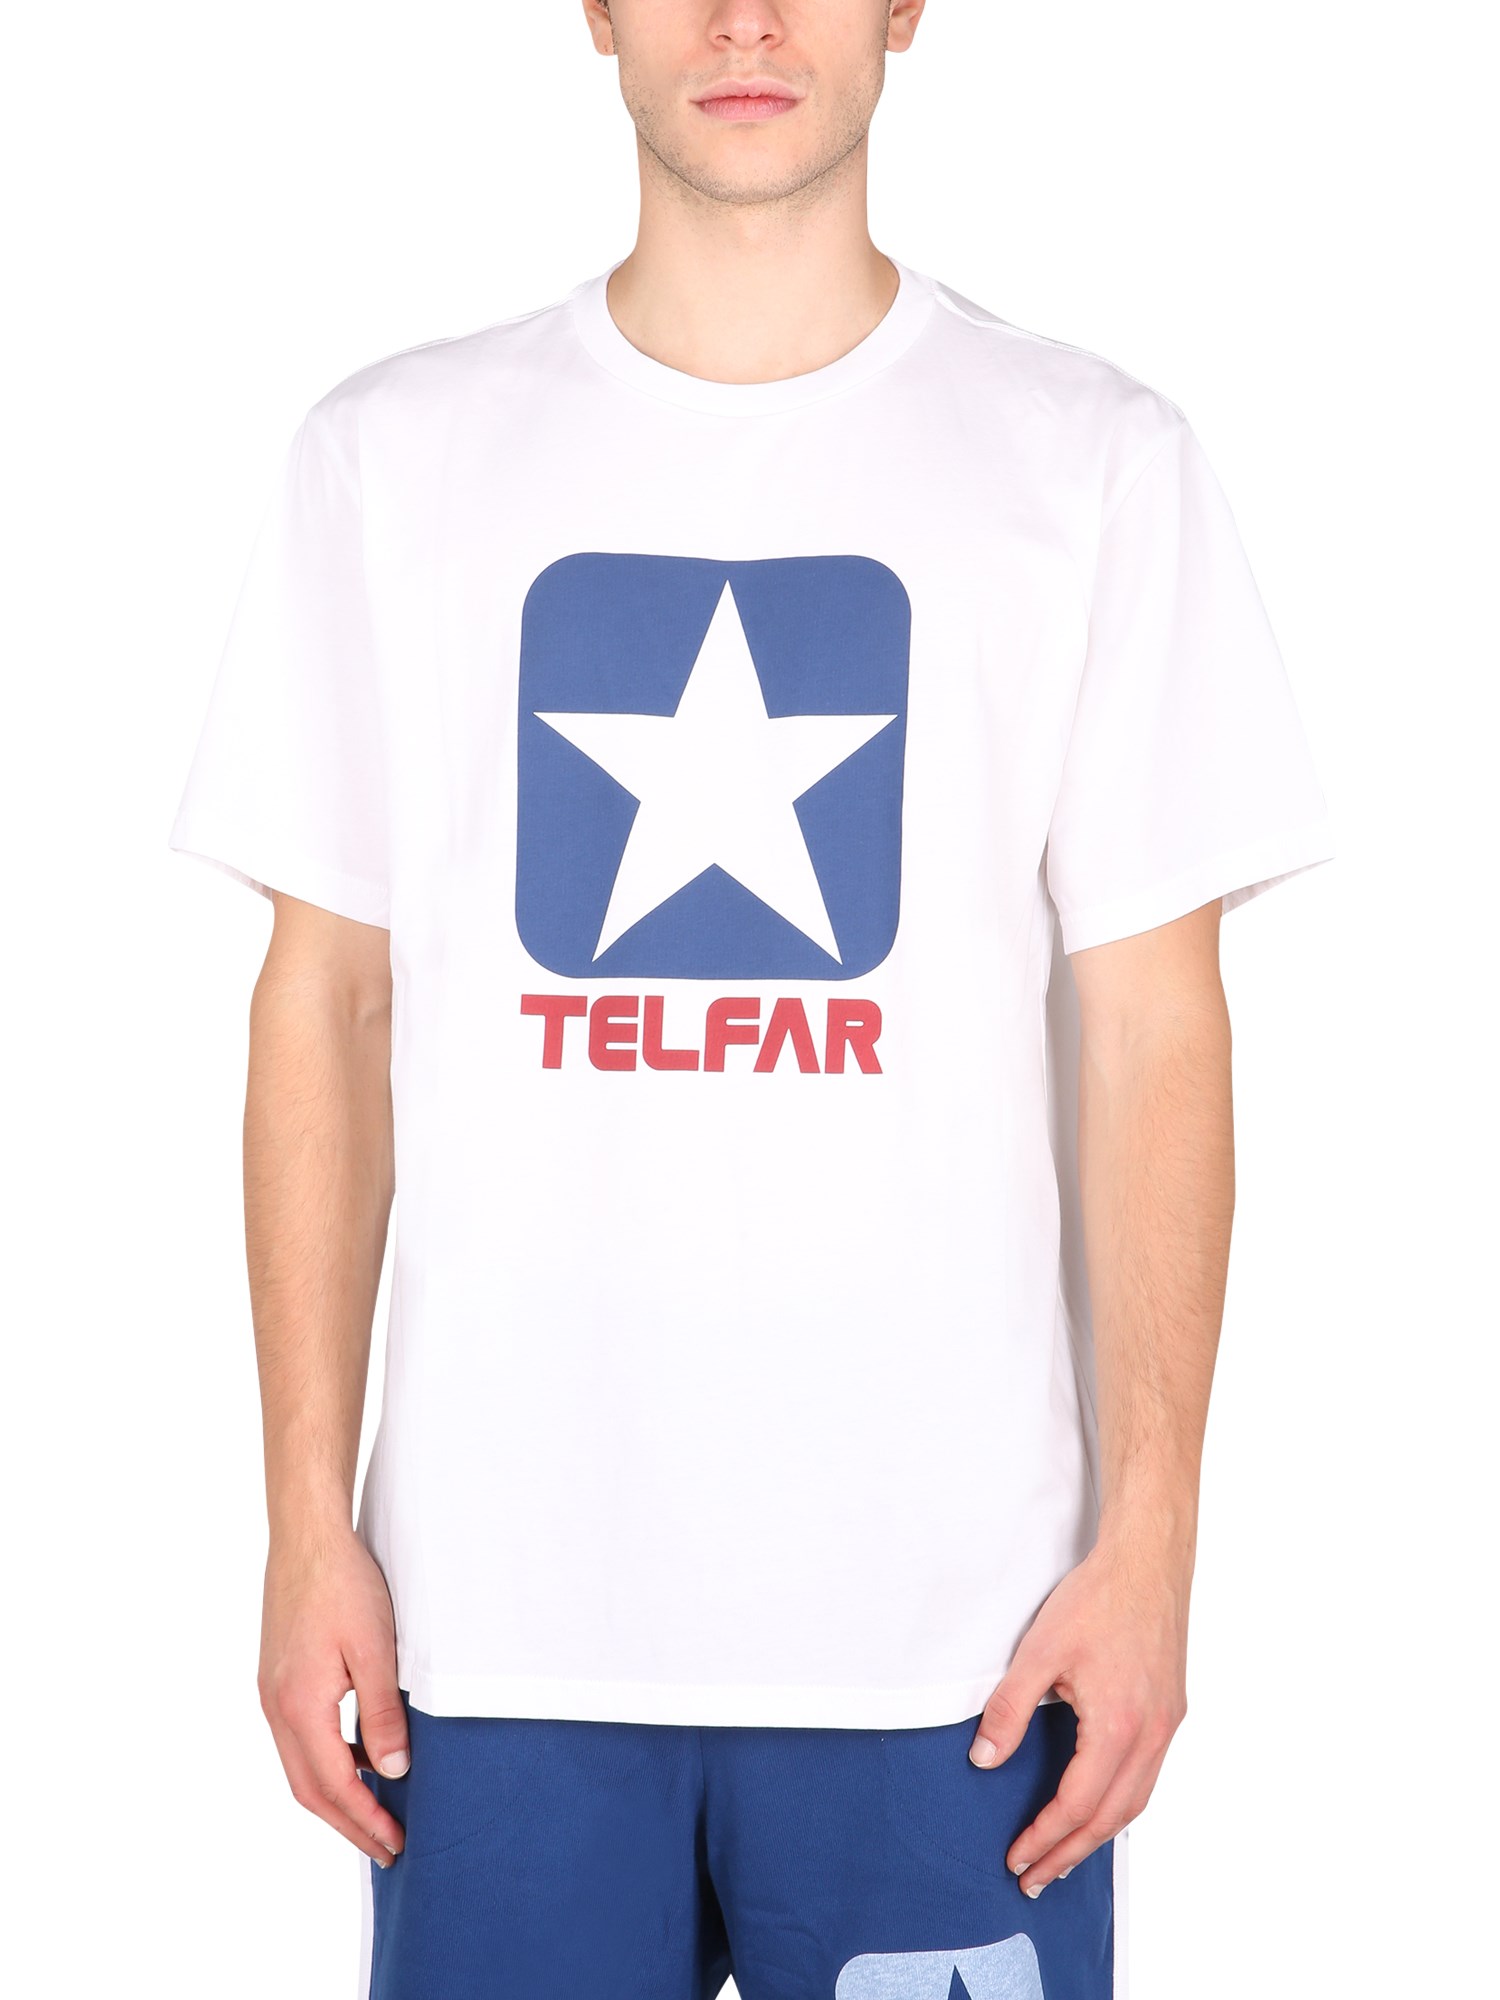 telfar x converse t-shirt with logo